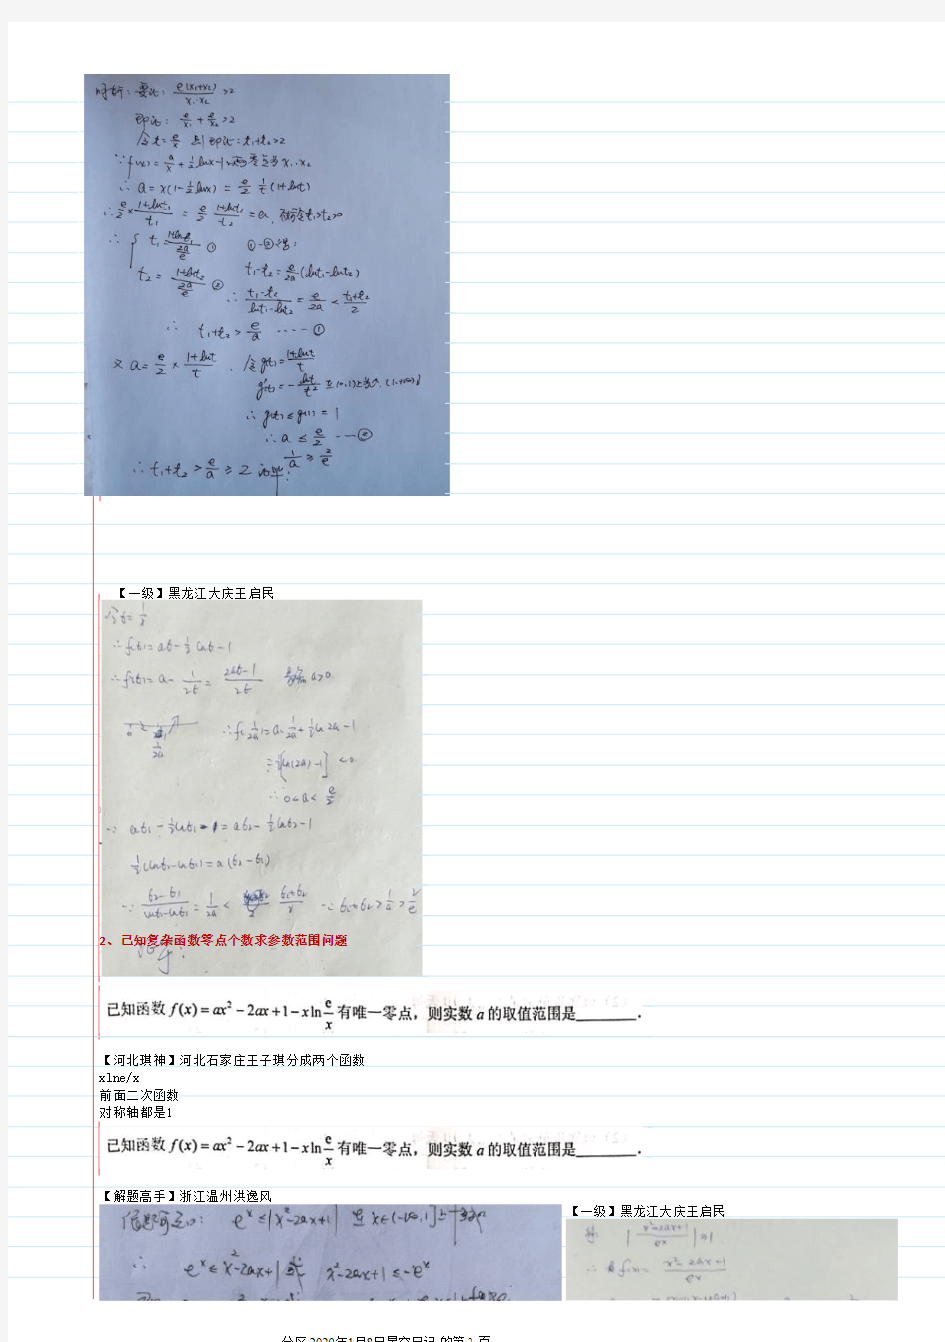 中学数学(高中)学科竞赛集锦 (13)